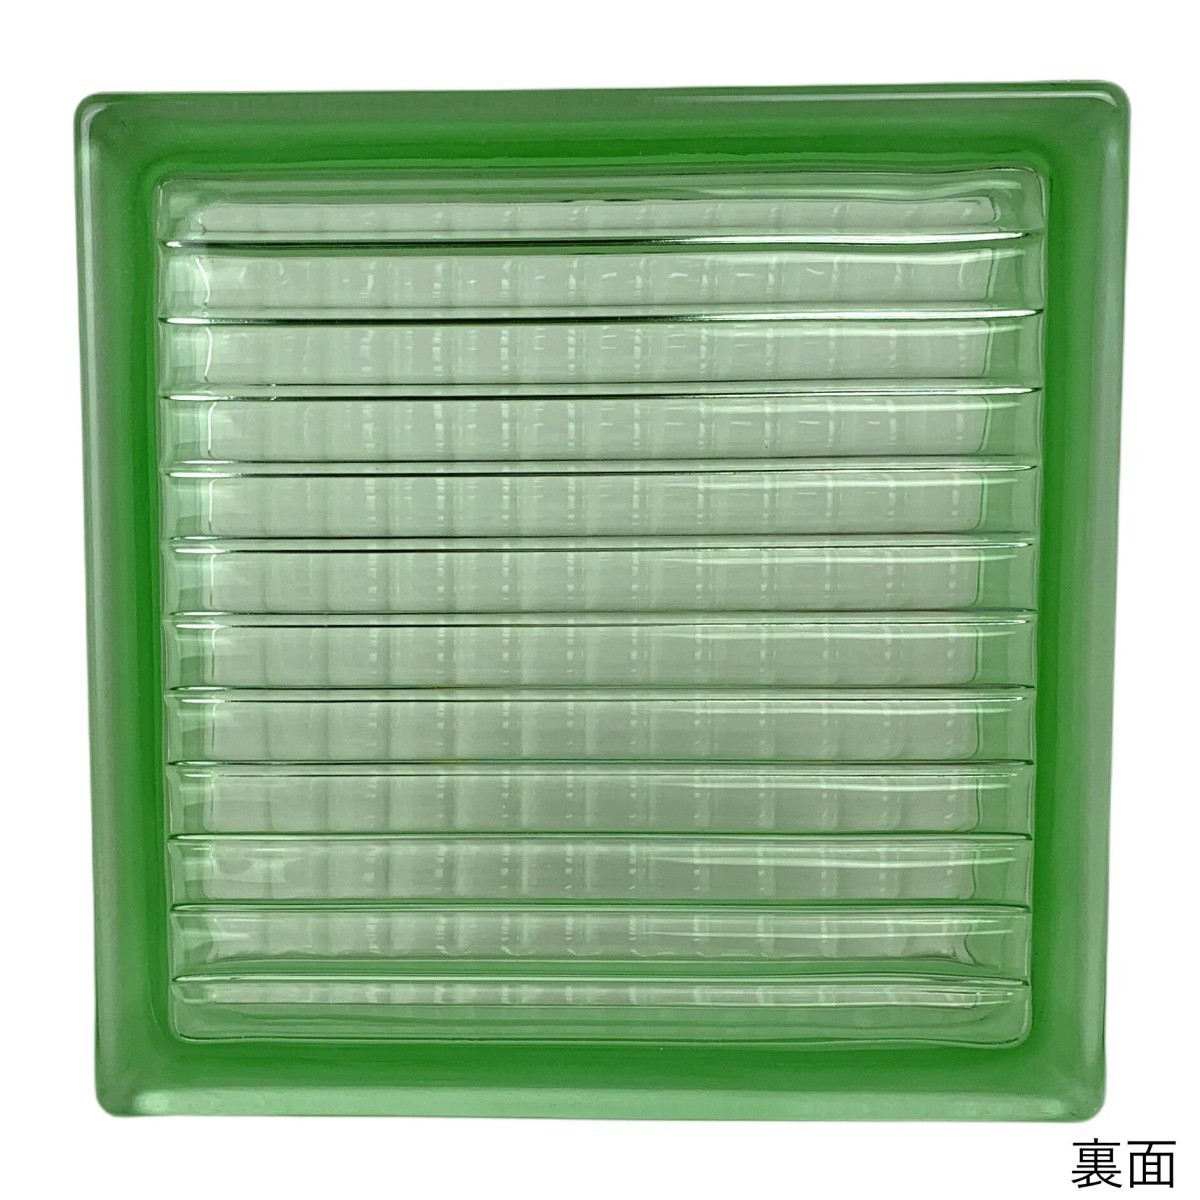 6個セット 送料無料 ガラスブロック 世界で有名なブランド品 厚み80mmグリーン色平行クロス gb4380-6p_画像4